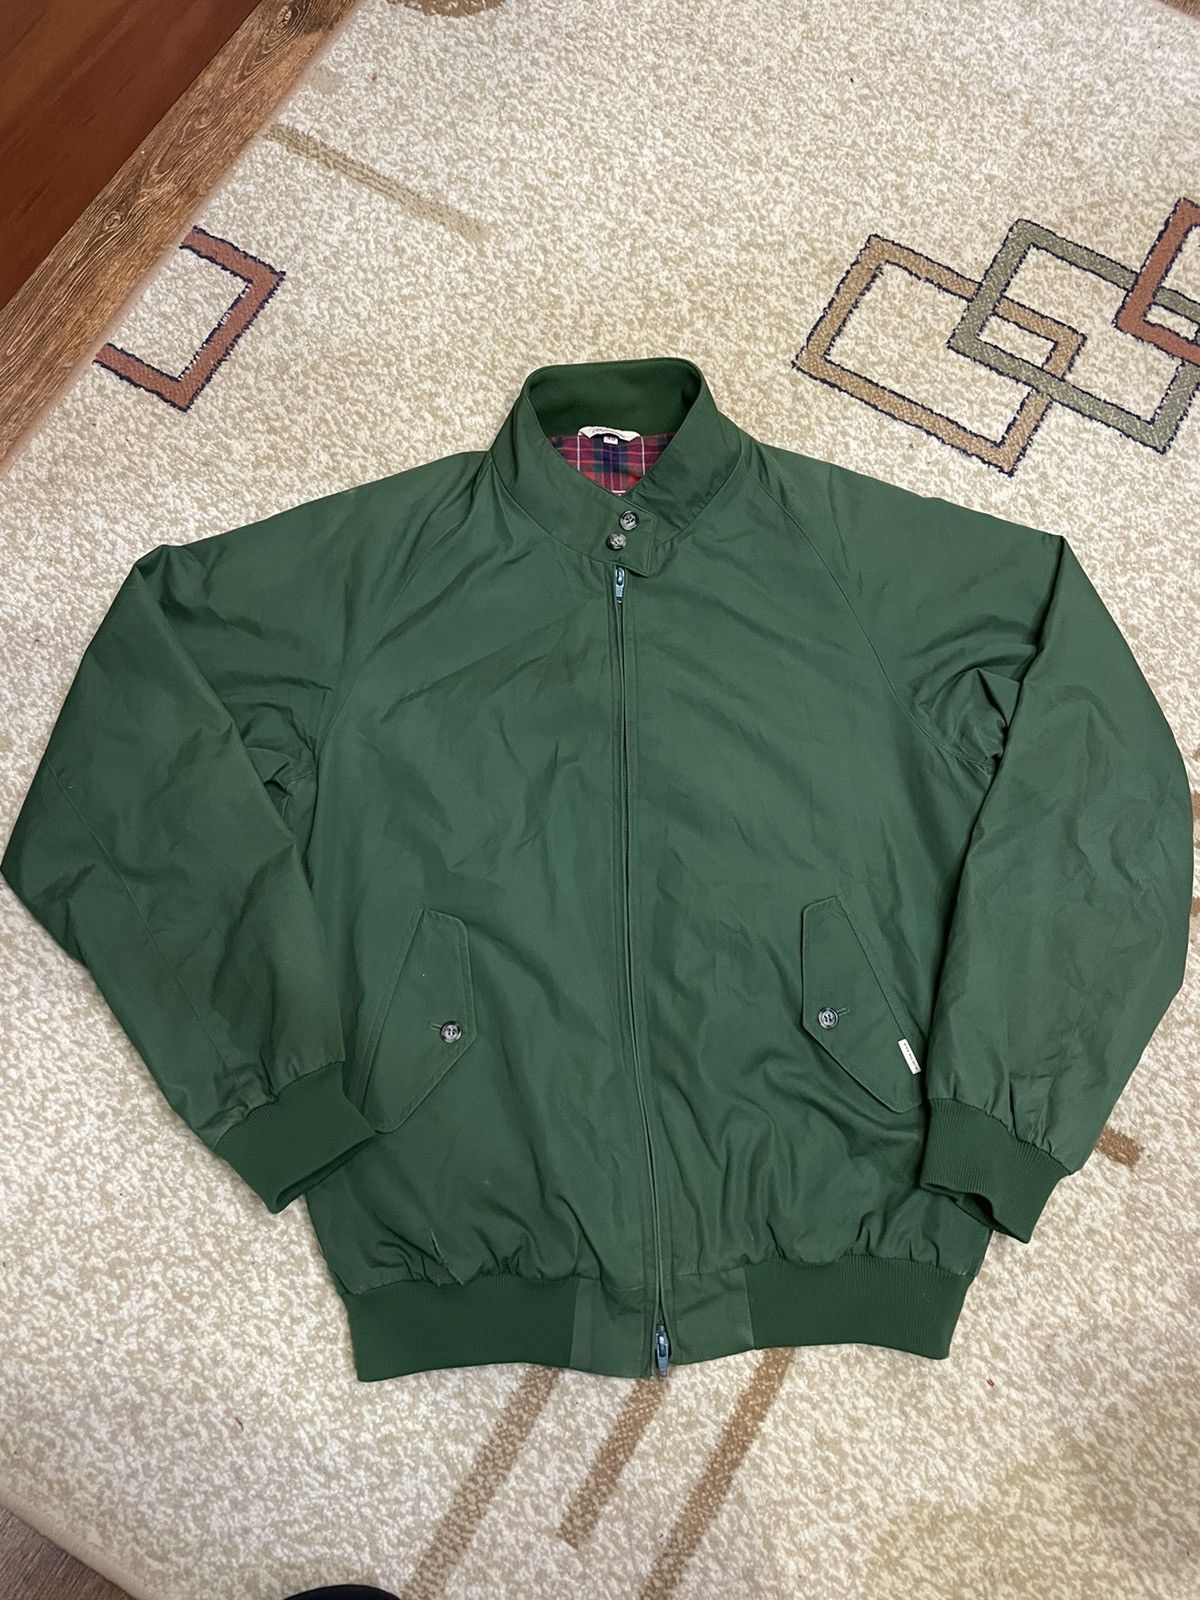 Vintage Baracuta jacket | Grailed